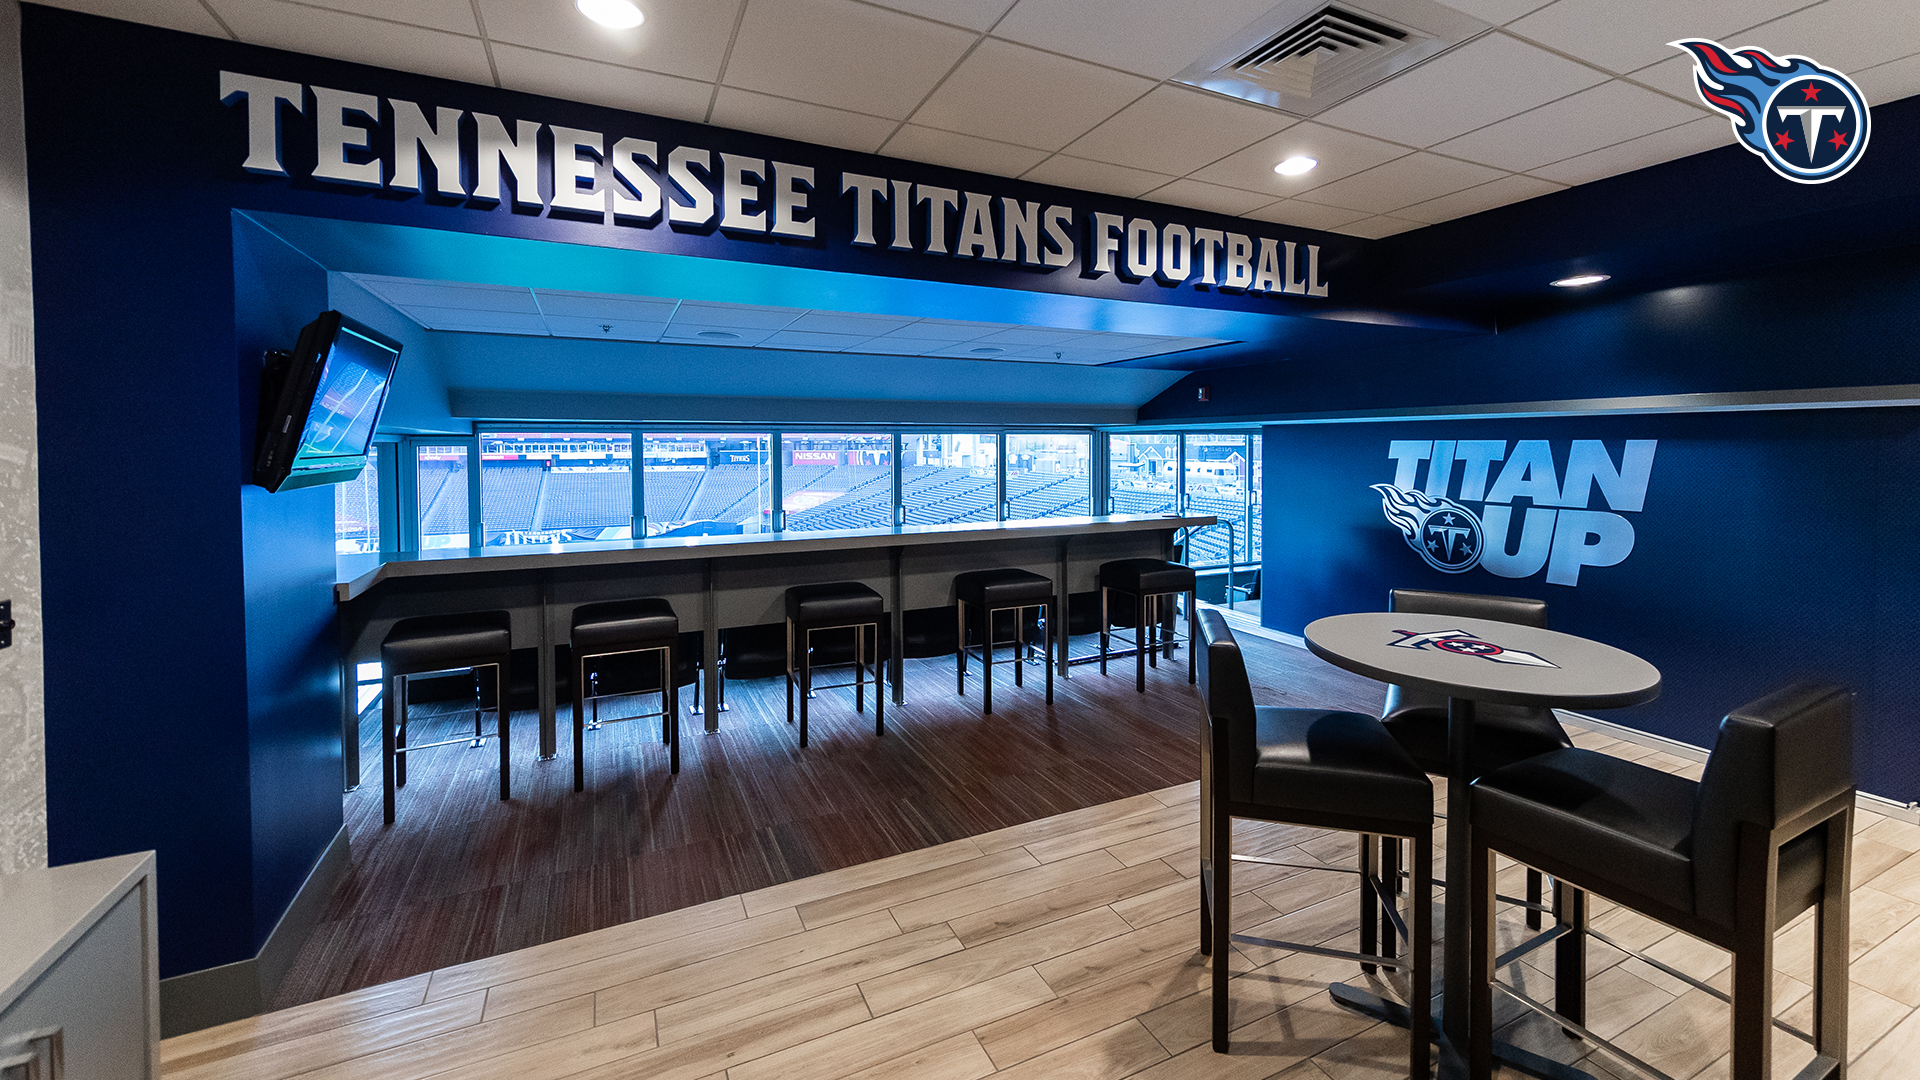 titans.io-media.com - Tennessee Titans Virtual Venue - Titans